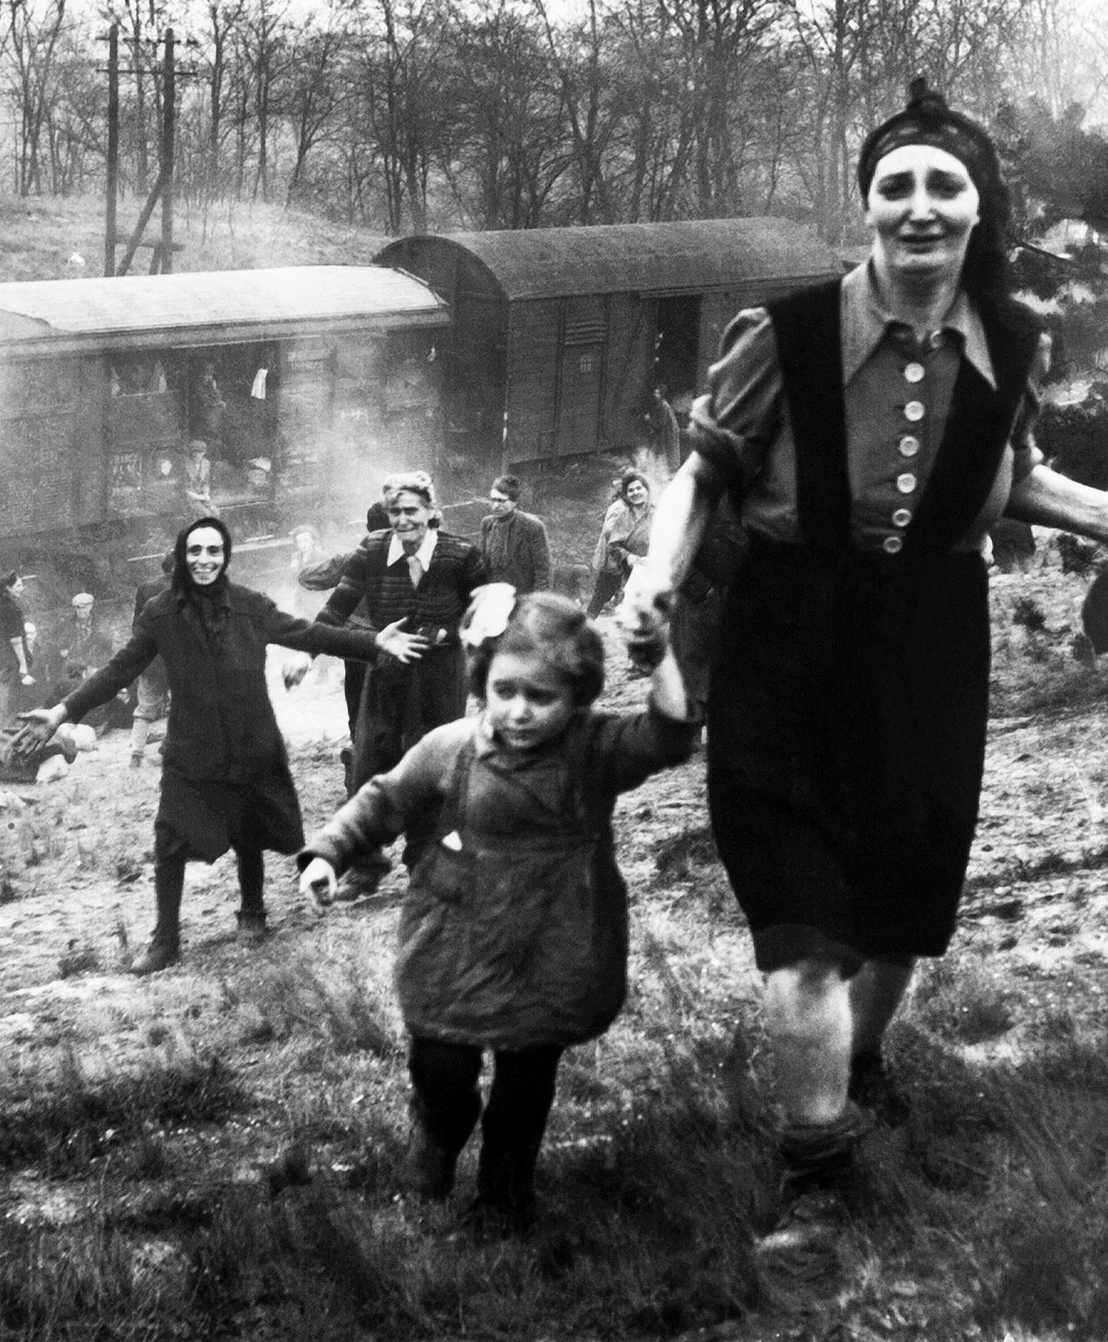 Am 13. April 1945 erreichten Einheiten der US-Armee einen Zug mit Häftlingen aus Bergen-Belsen in der Nähe des Dorfes Farsleben. Die deutschen Bewacher des Zuges waren geflohen. Foto Clarence L. Benjamin. Privatbesitz George C. Gross